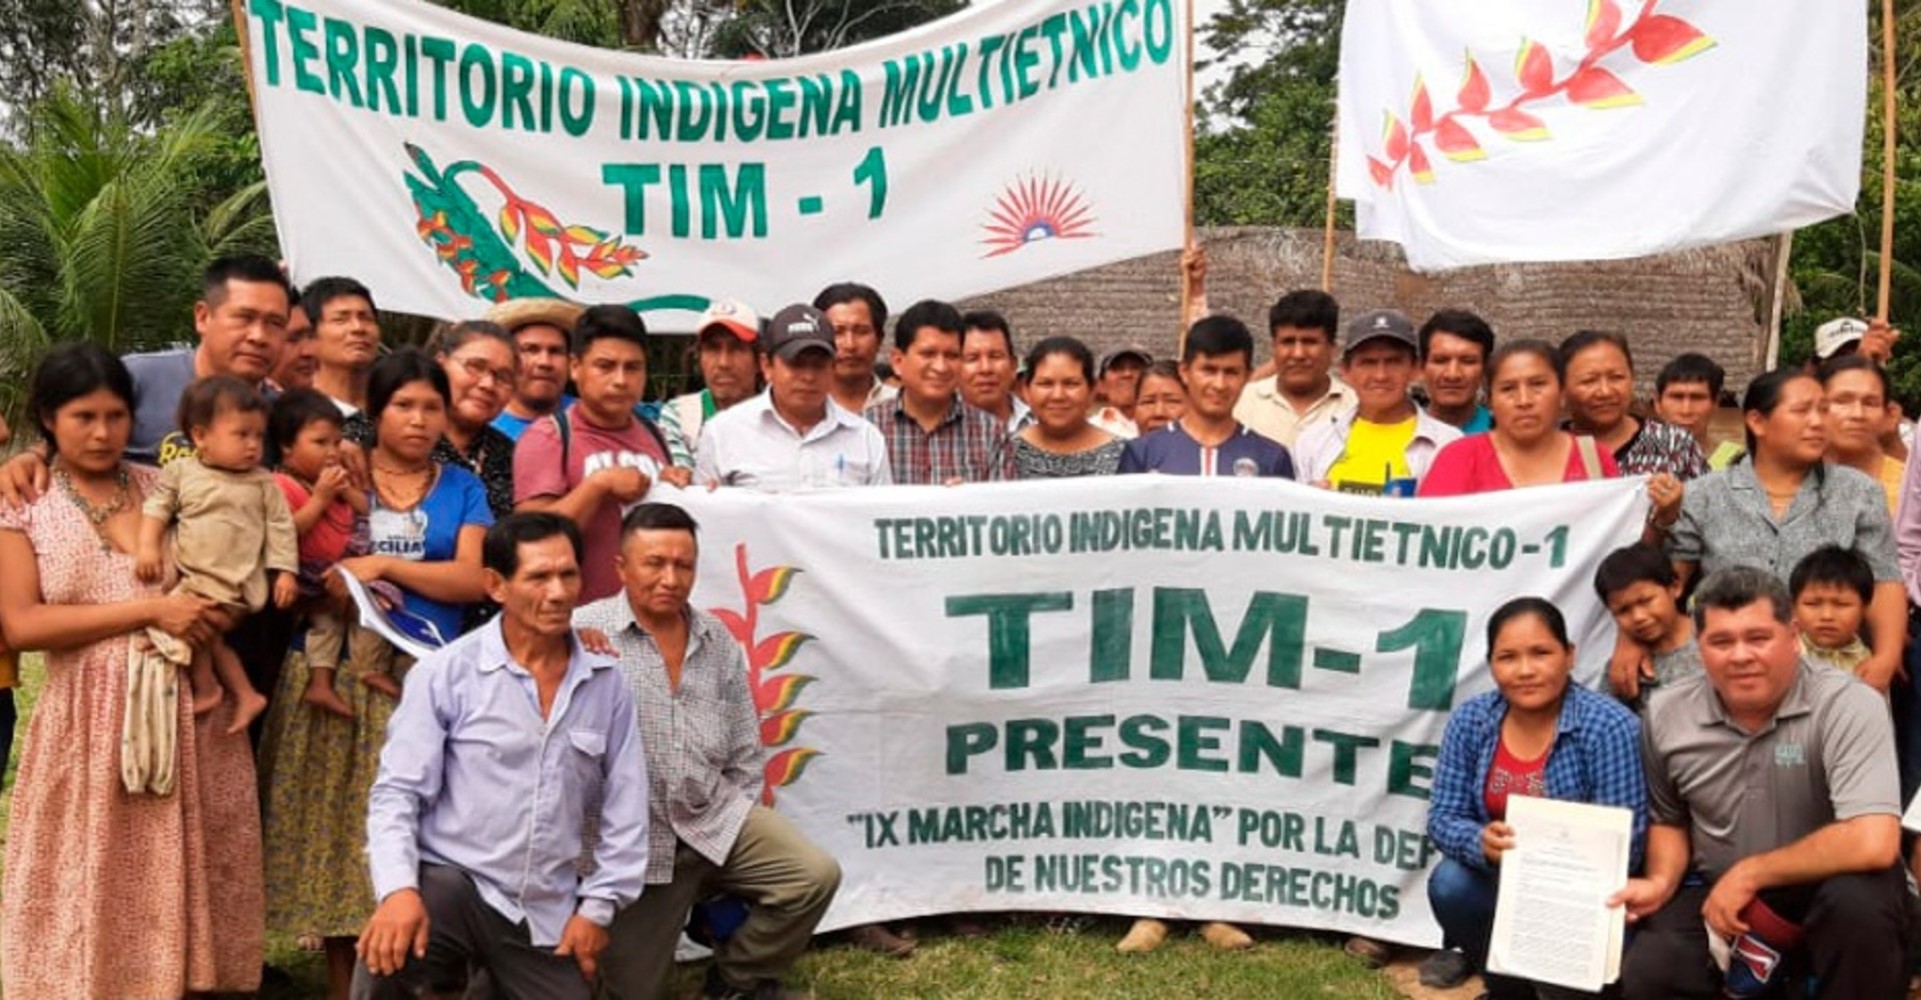 La burocracia estatal no detiene los procesos autonómicos Indígenas en Bolivia